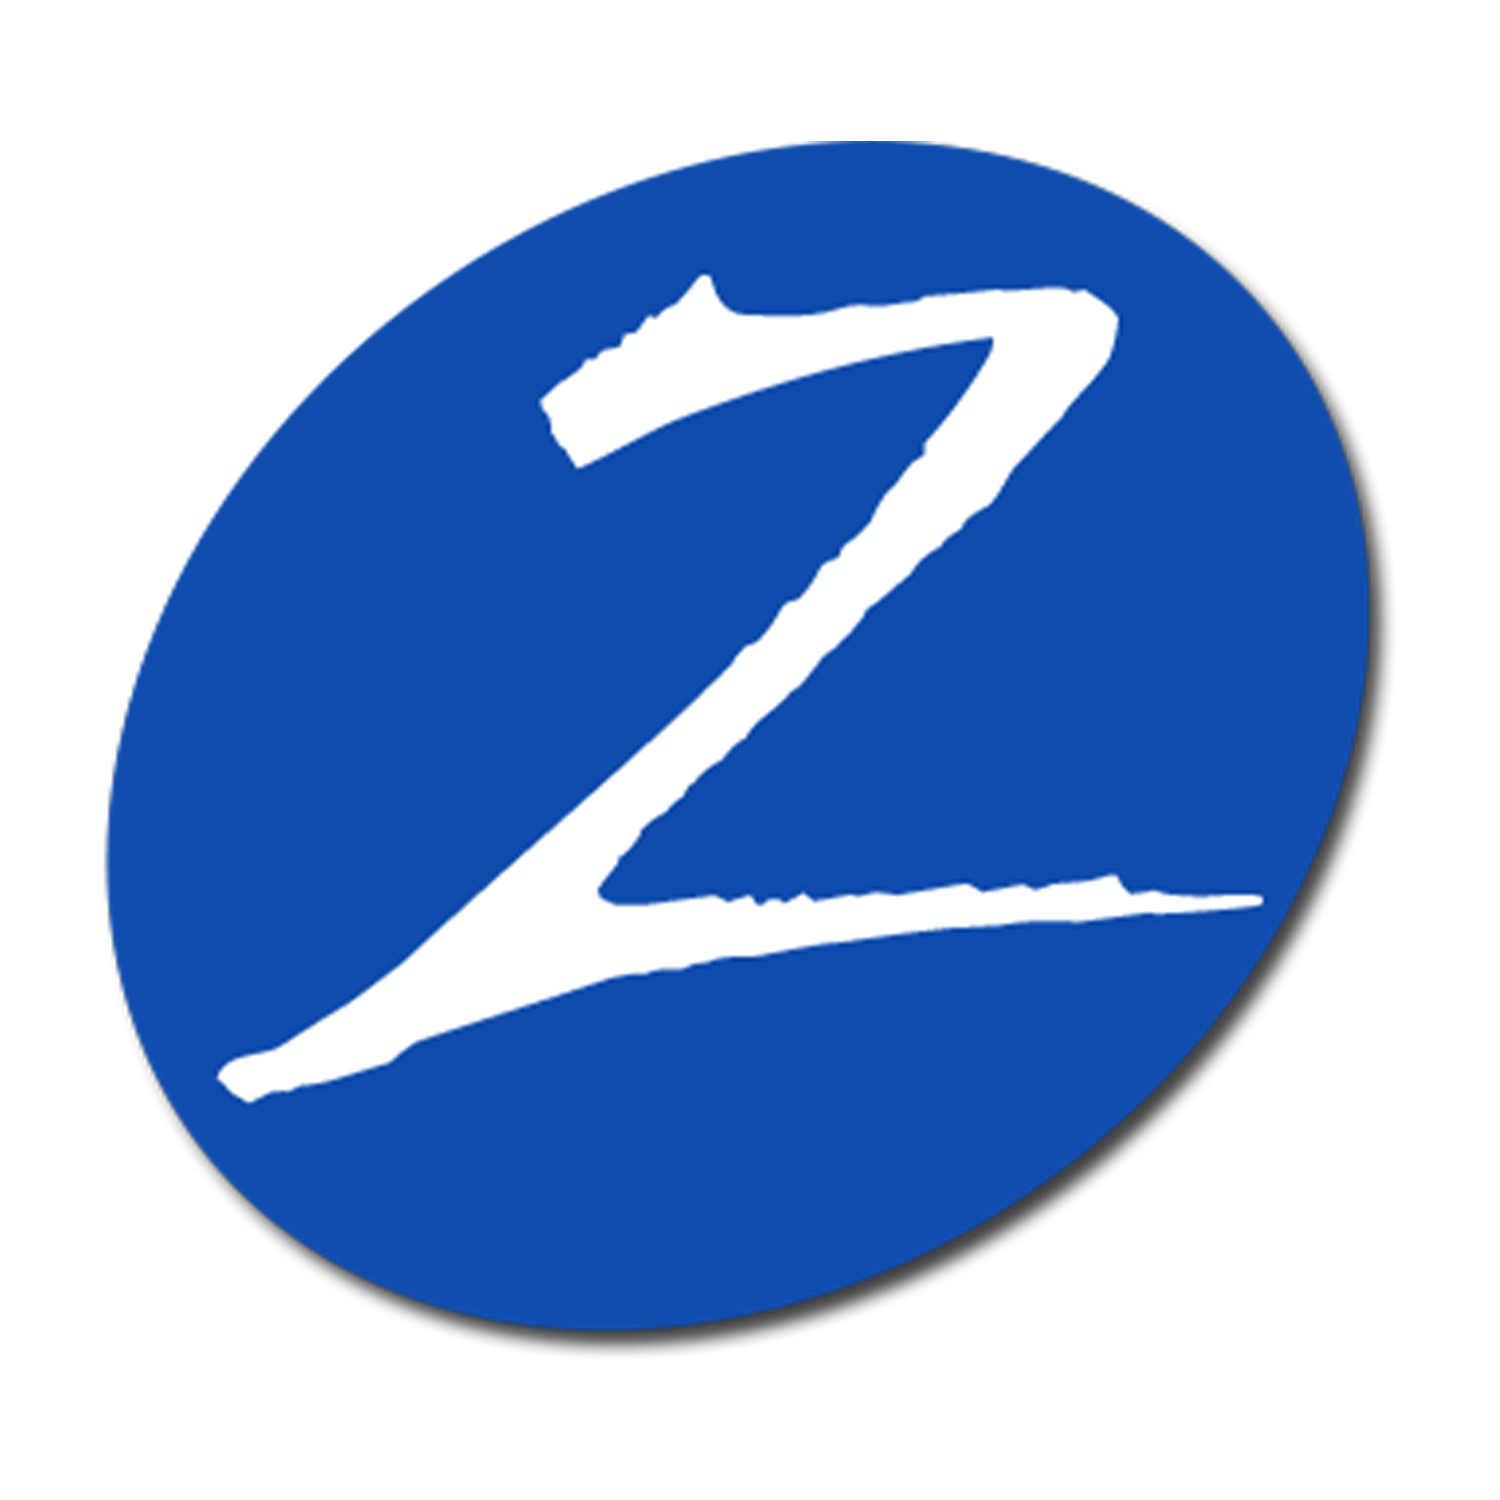 www.zetronix.com